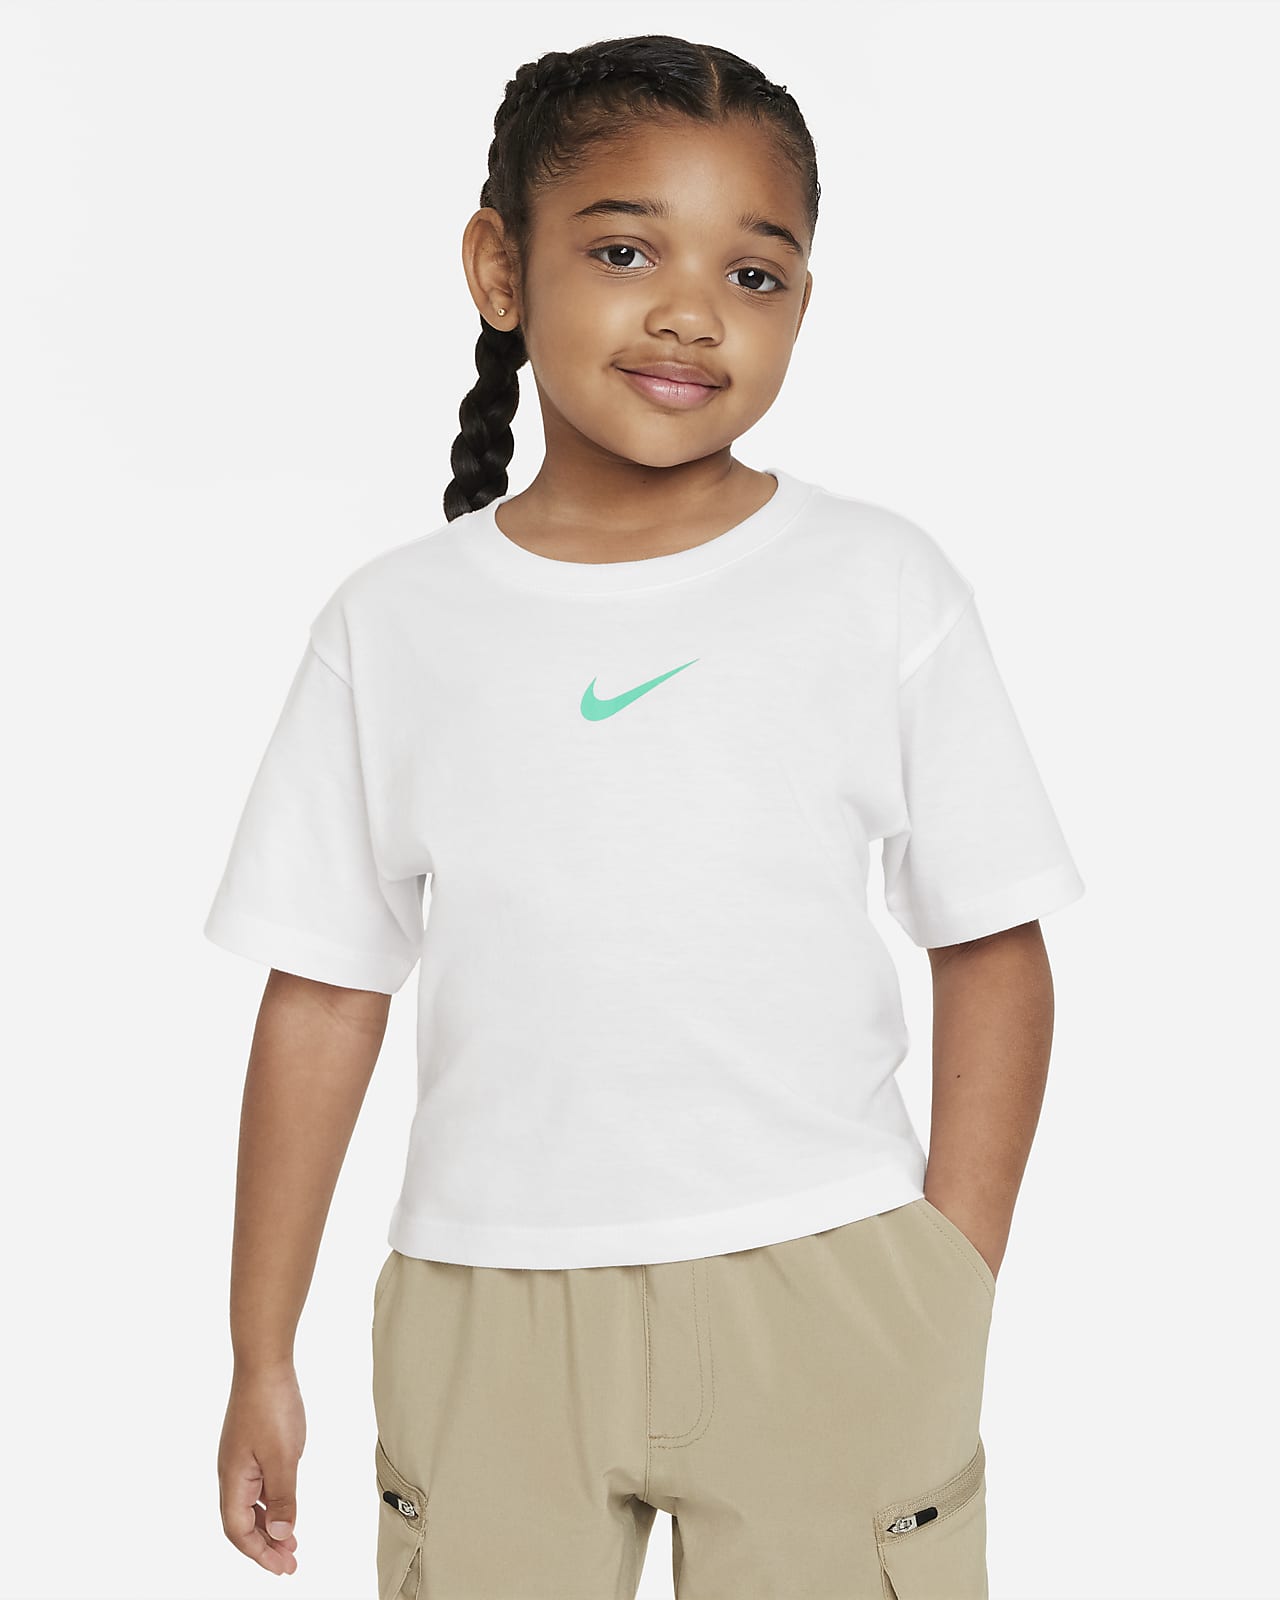 Femme Sport Tee Kids T-Shirt. Nike.com